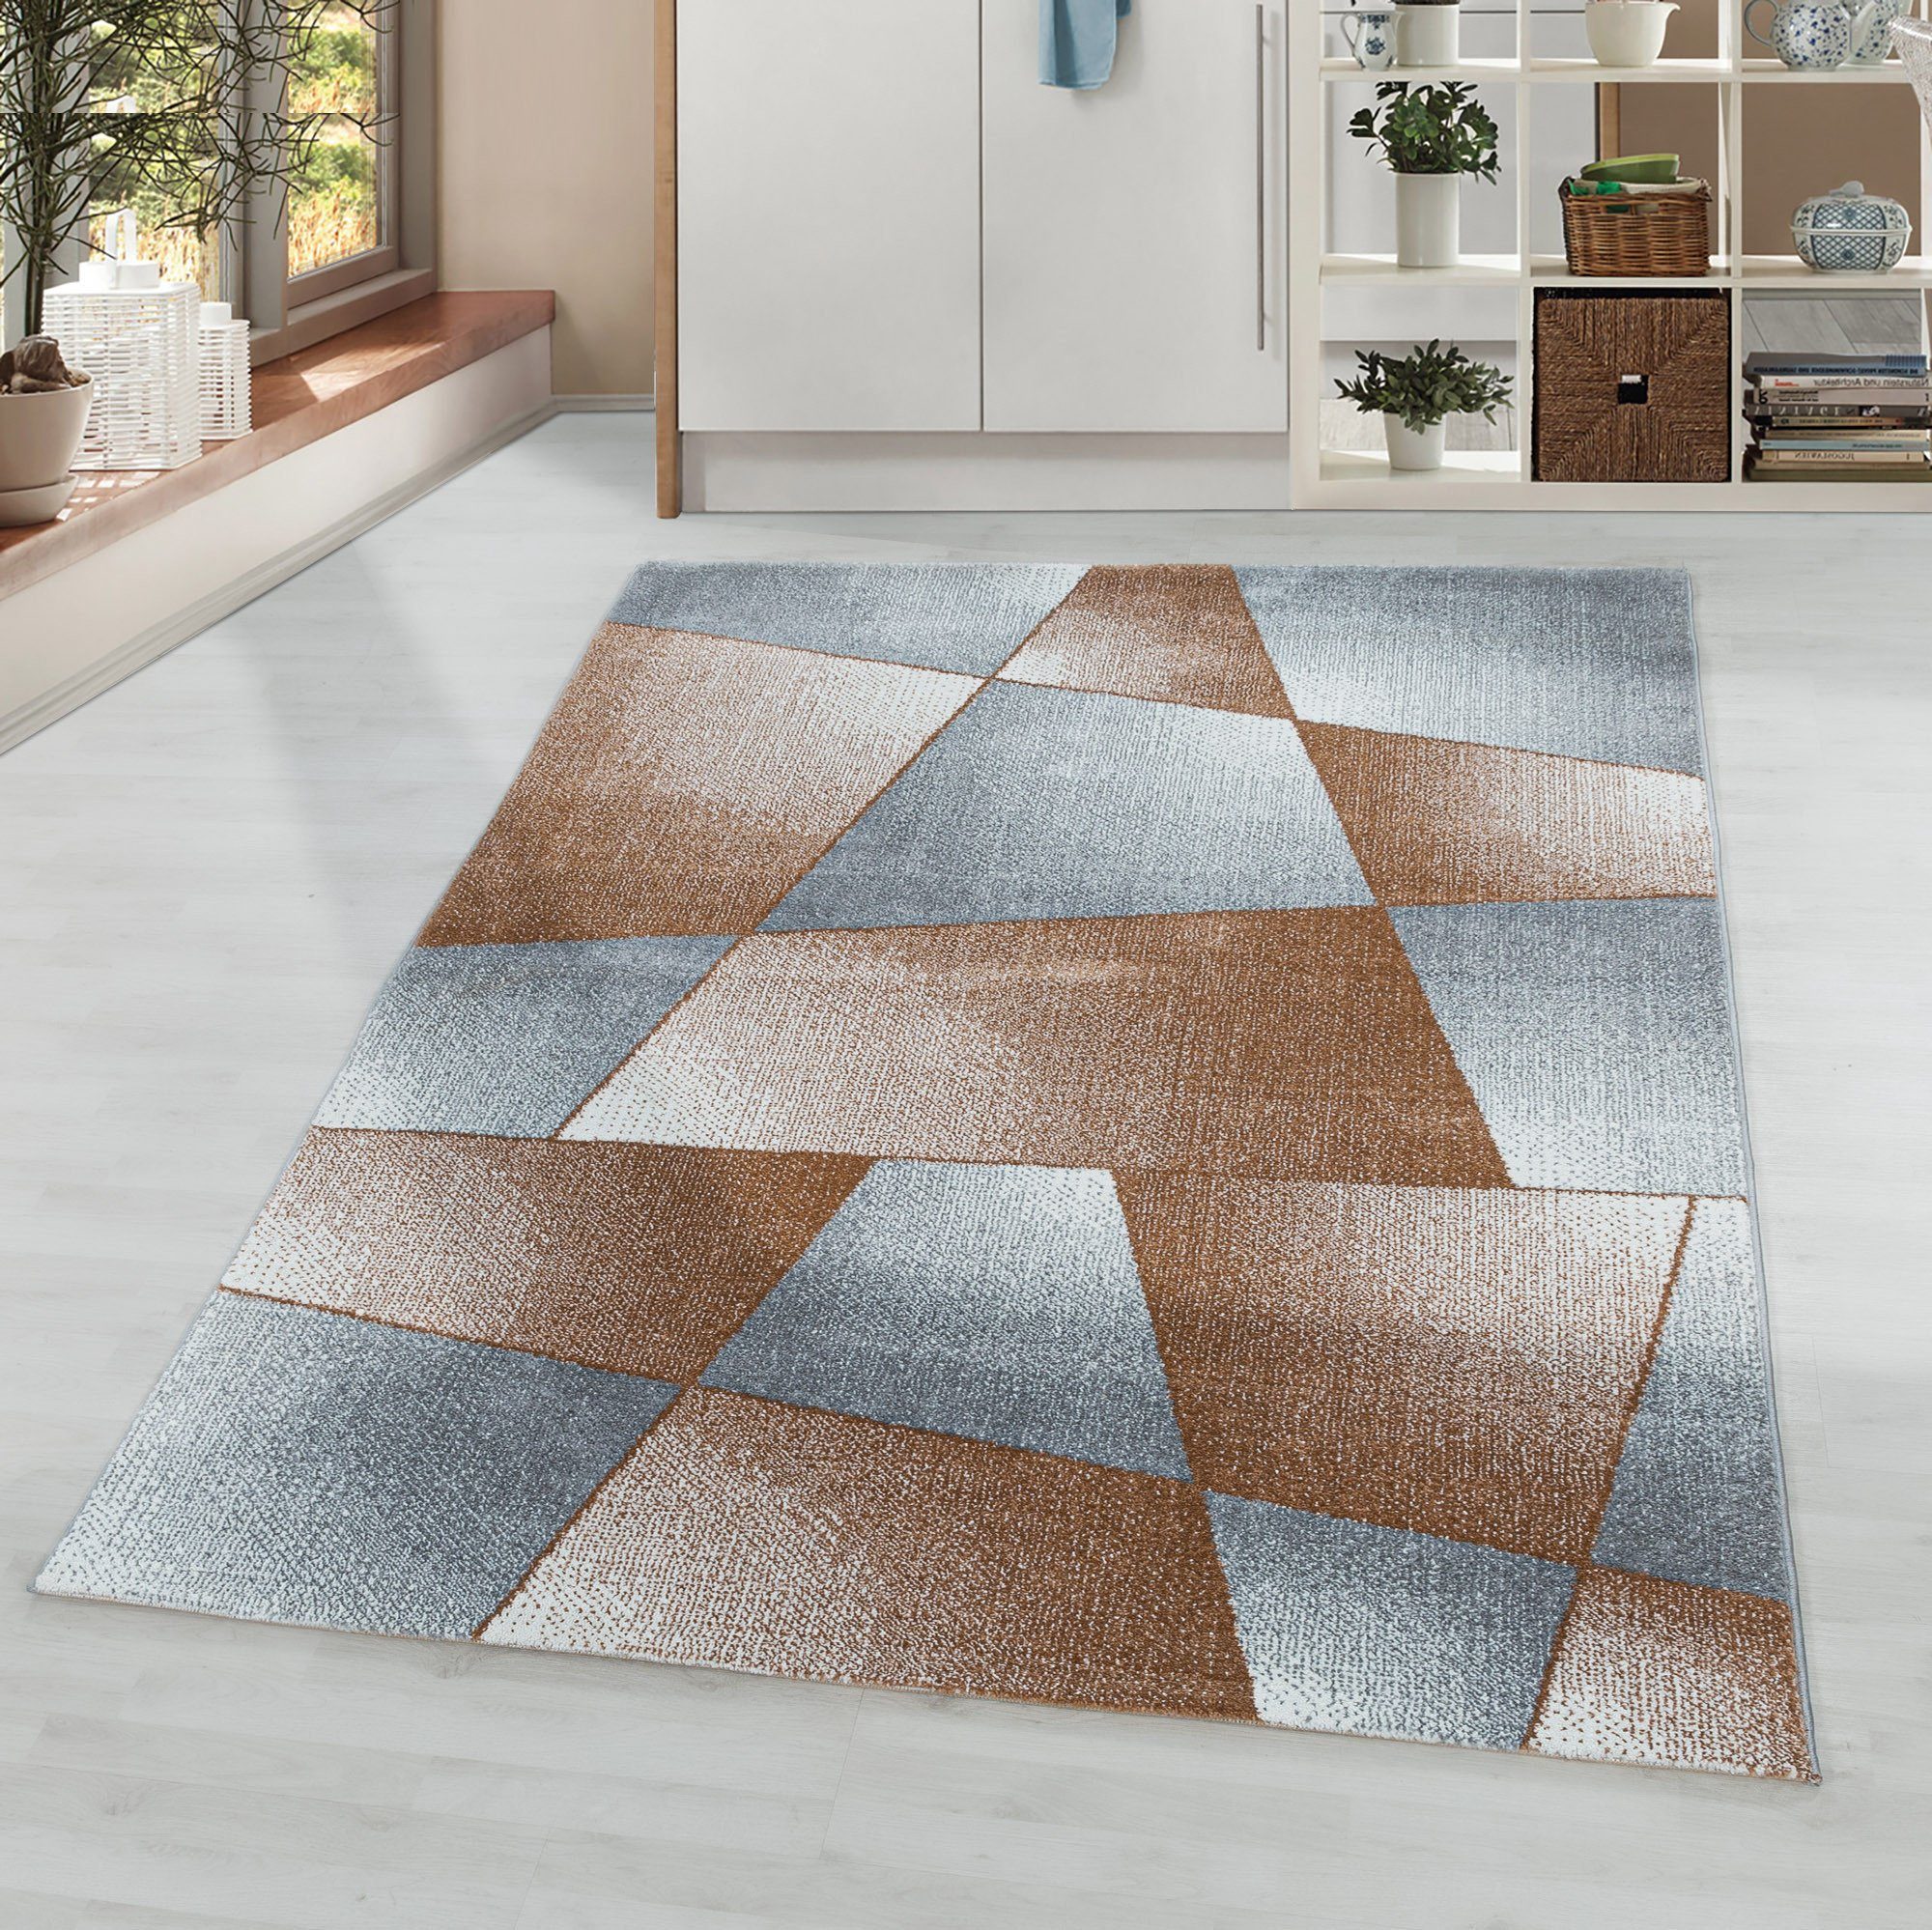 beliebte Wahl Designteppich Kurzflorteppich Mosaikmuster Flachflorteppich Wohnzimmer Schlafzimmer, Kupfer Miovani